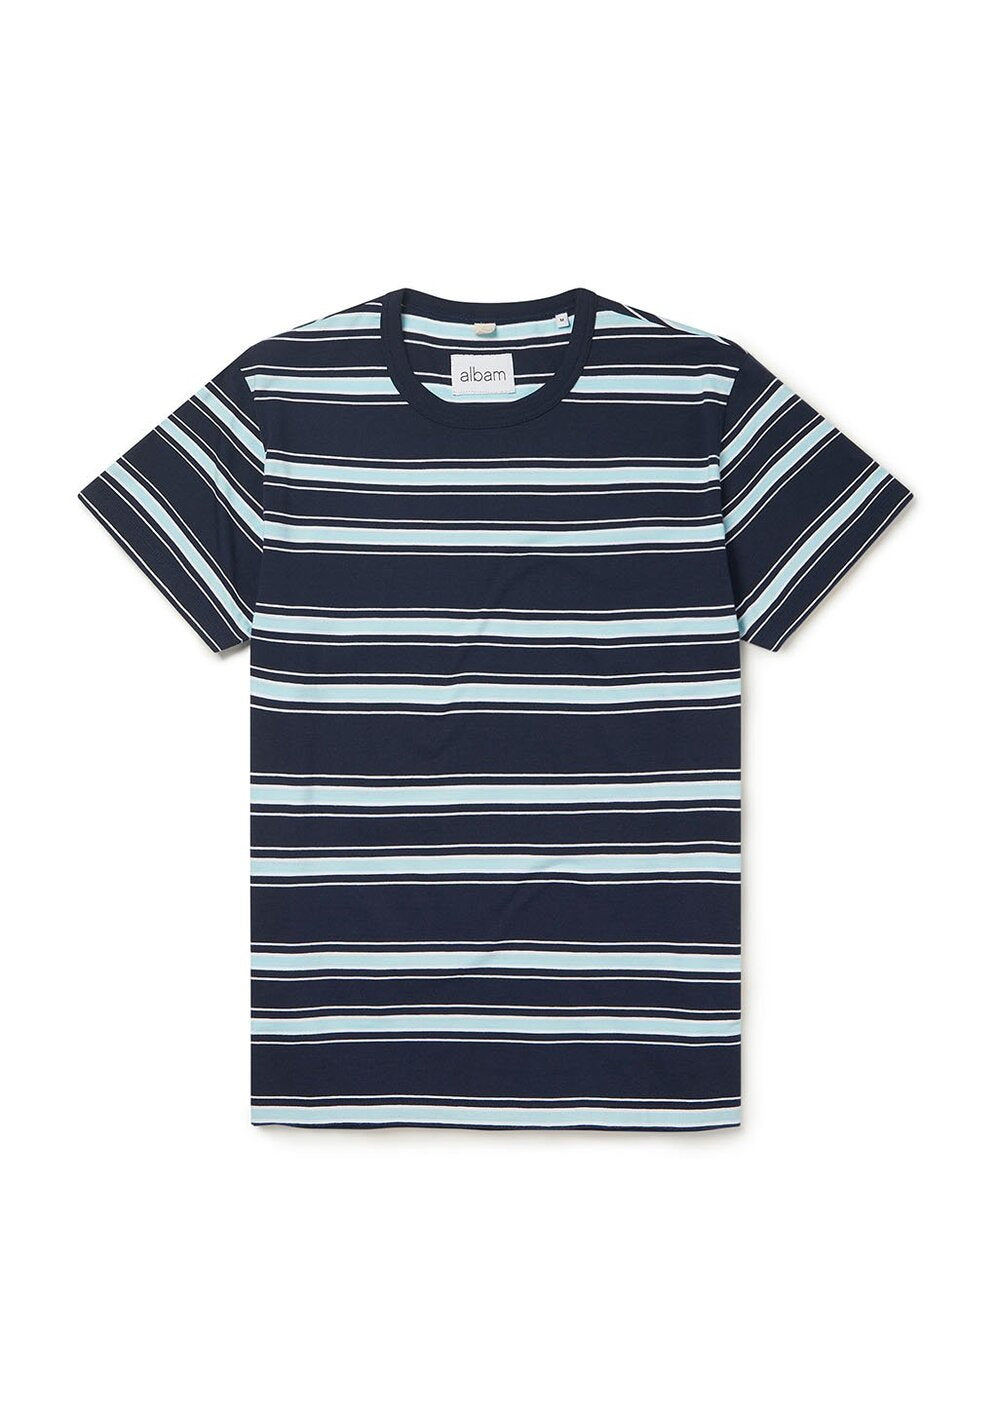 Albam Heritage Stripe T-Shirt Navy/Light Blue/White